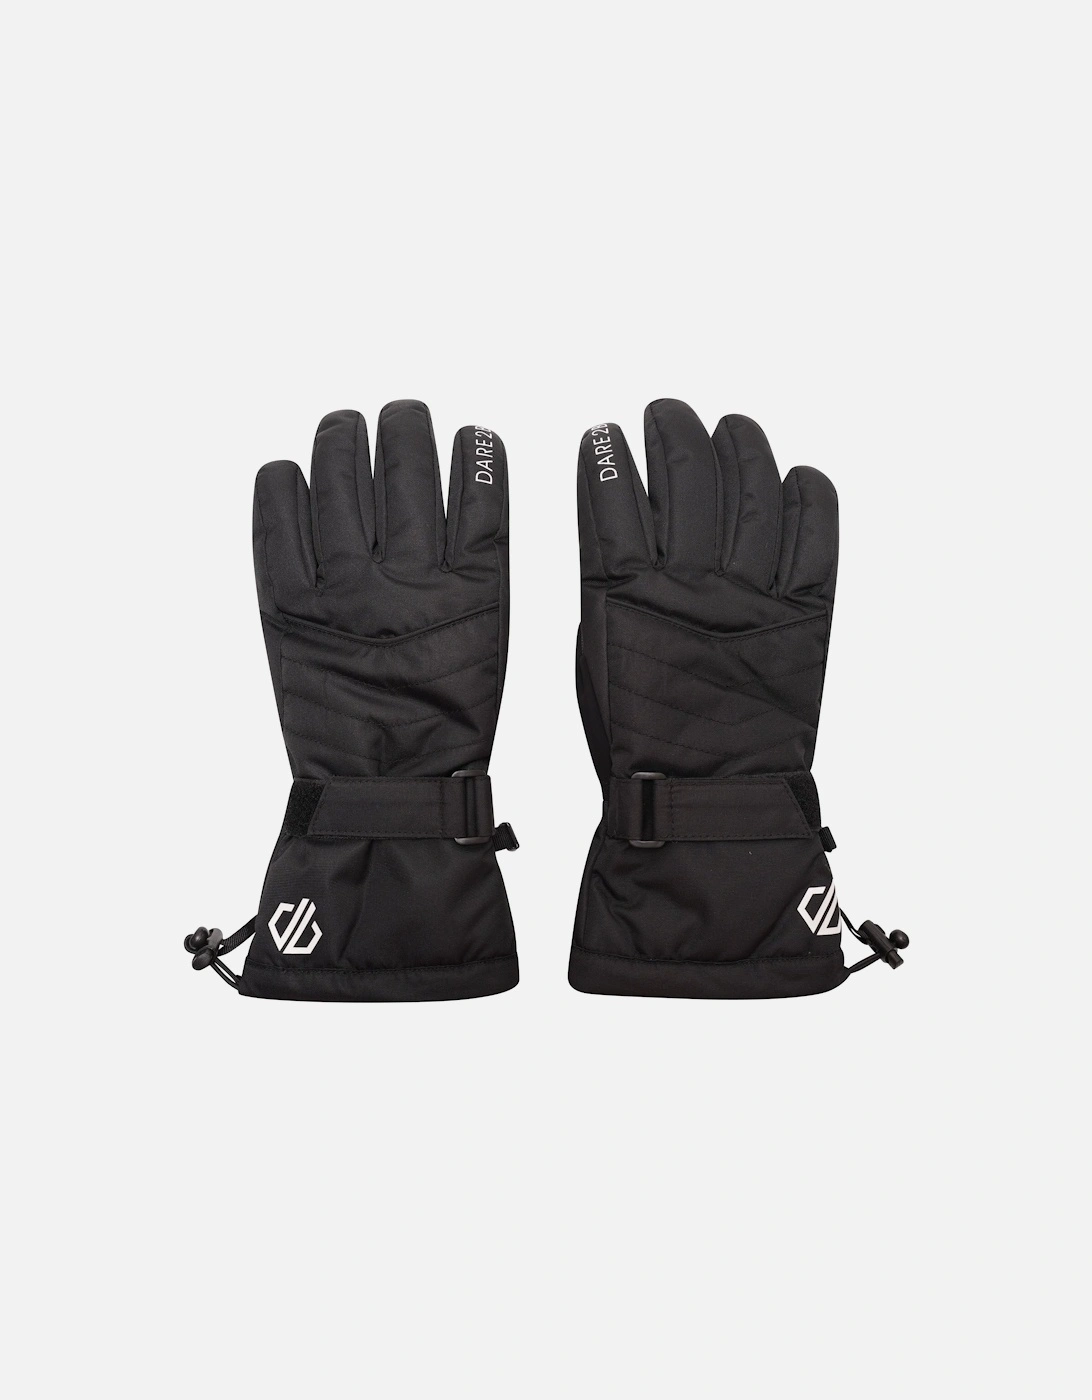 Womens Acute Adjustable Waterproof Ski Gloves - Black